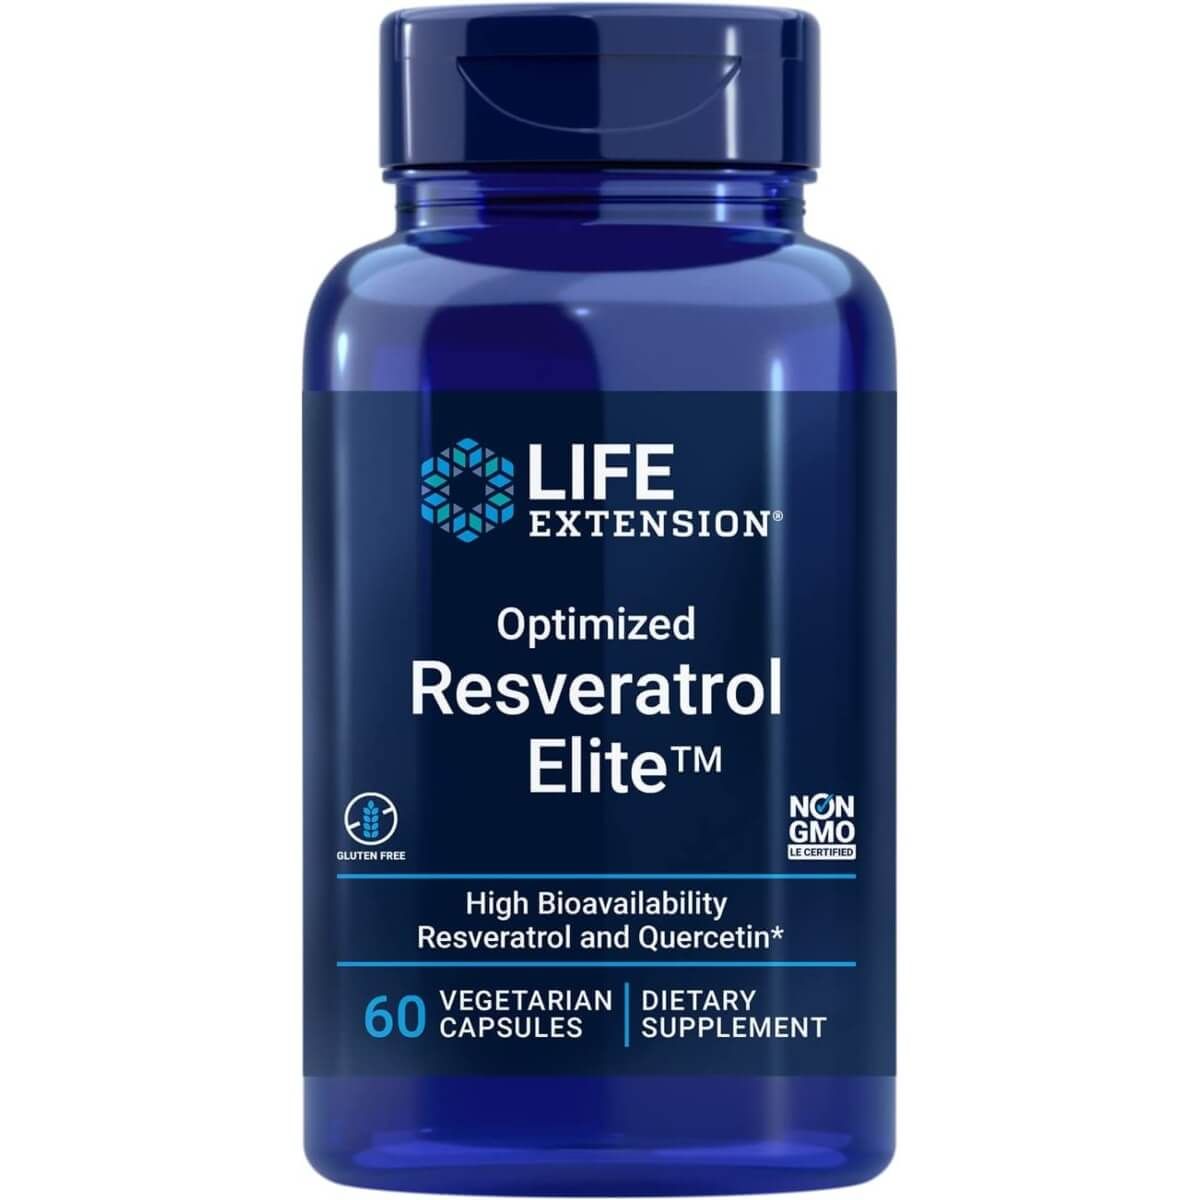 Photos - Vitamins & Minerals Life Extension Optimized Resveratrol Elite 60 Vegetarian Capsules PBW-P357 